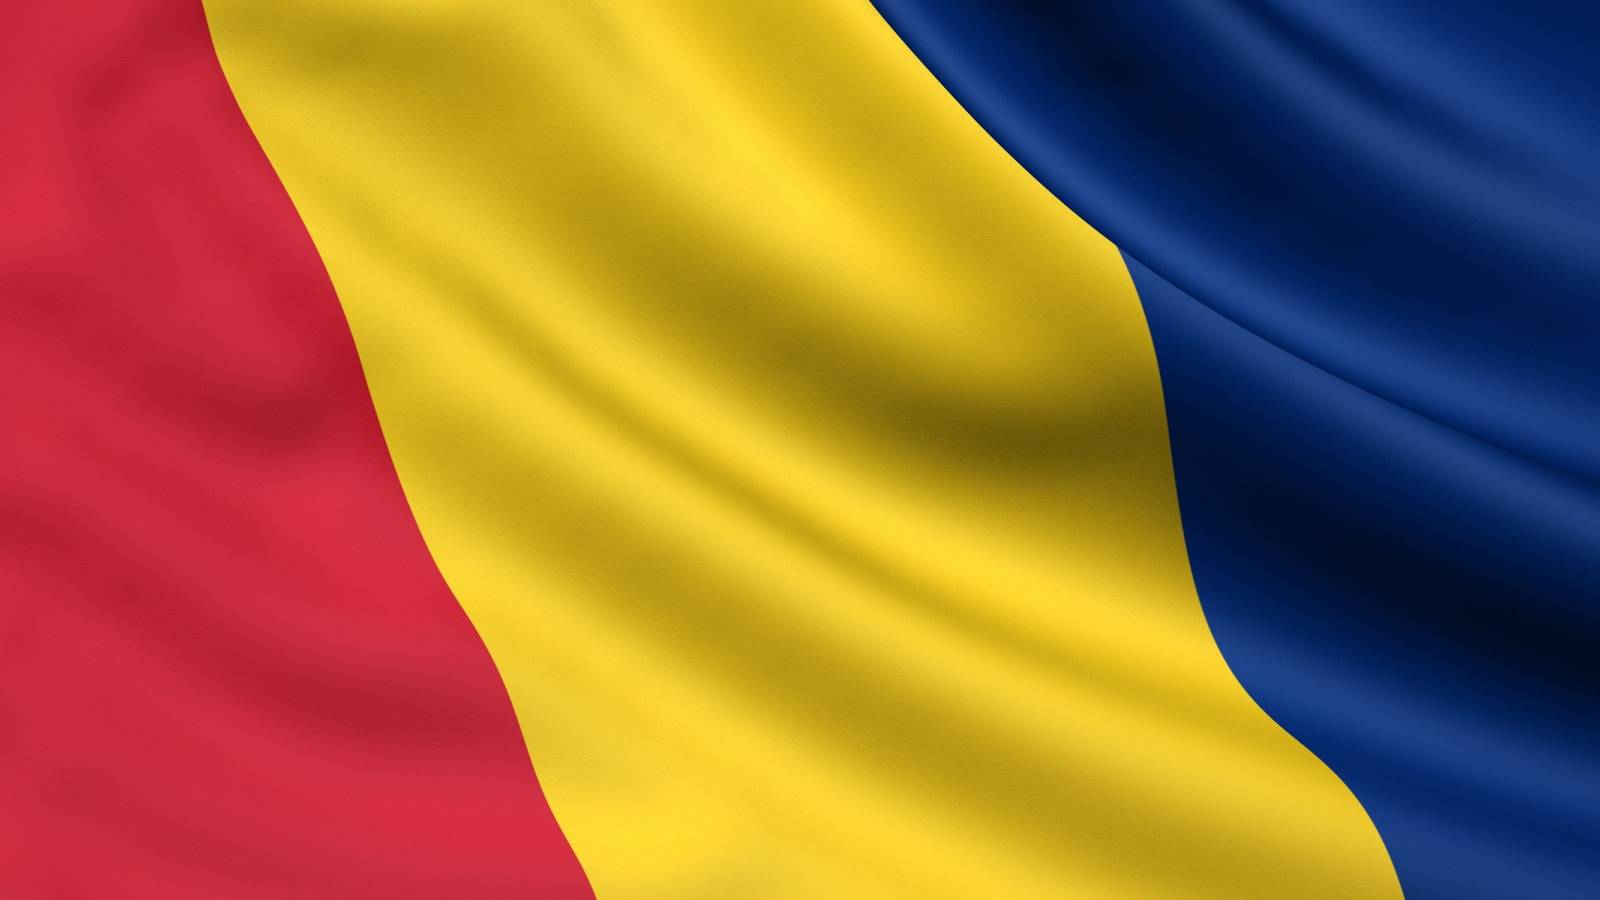 Messaggio COVID delle autorità rumene per le persone nell'ondata 4